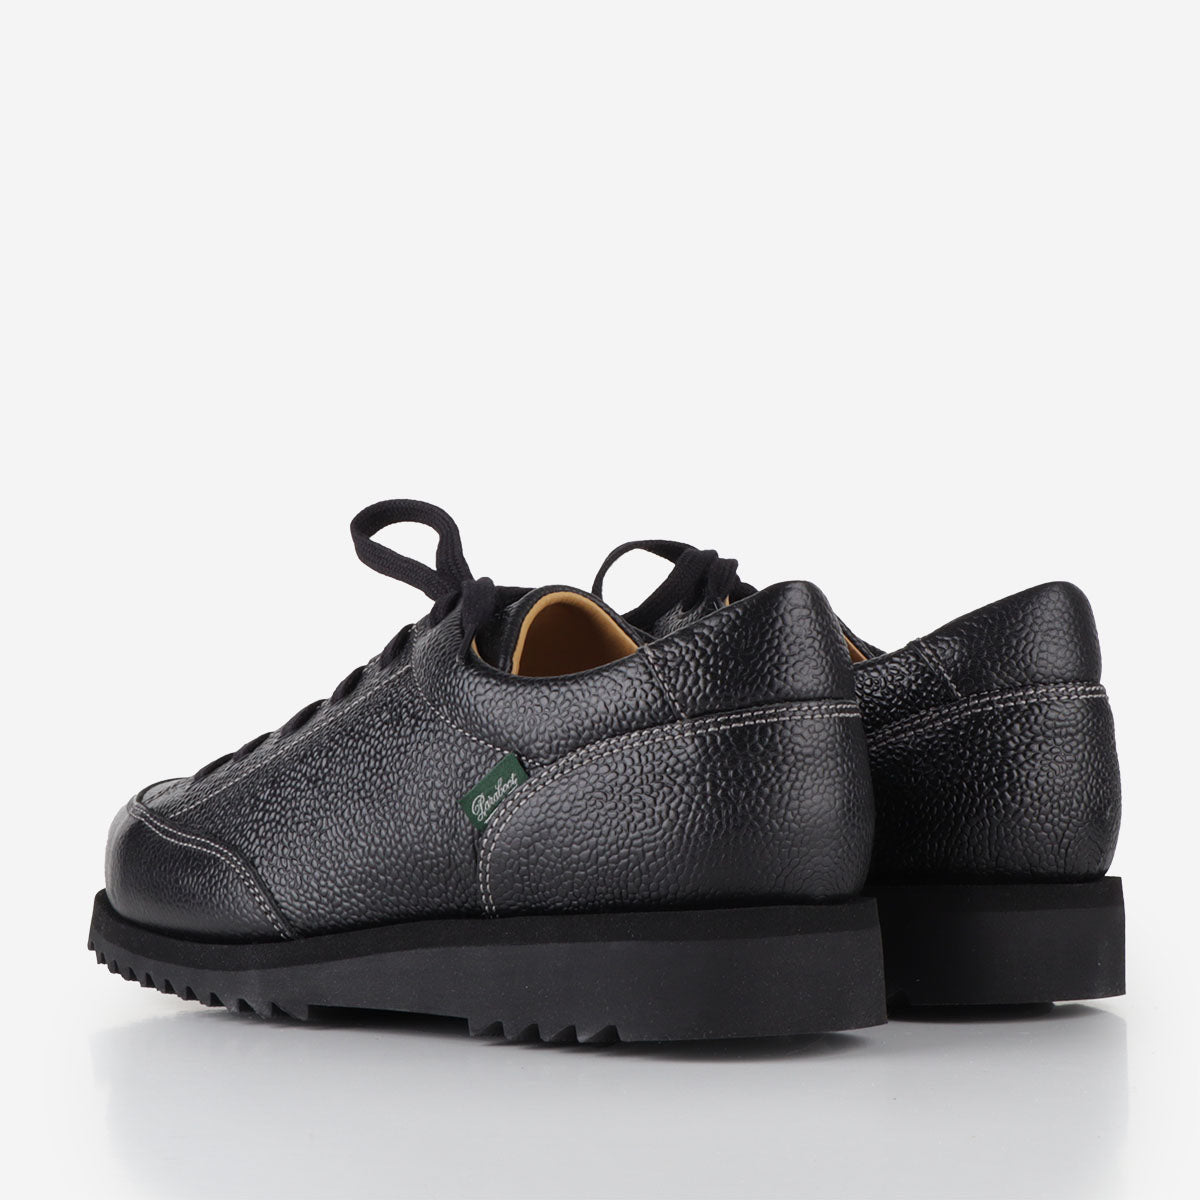 Paraboot Sierra Graine Shoes, Black, Detail Shot 3